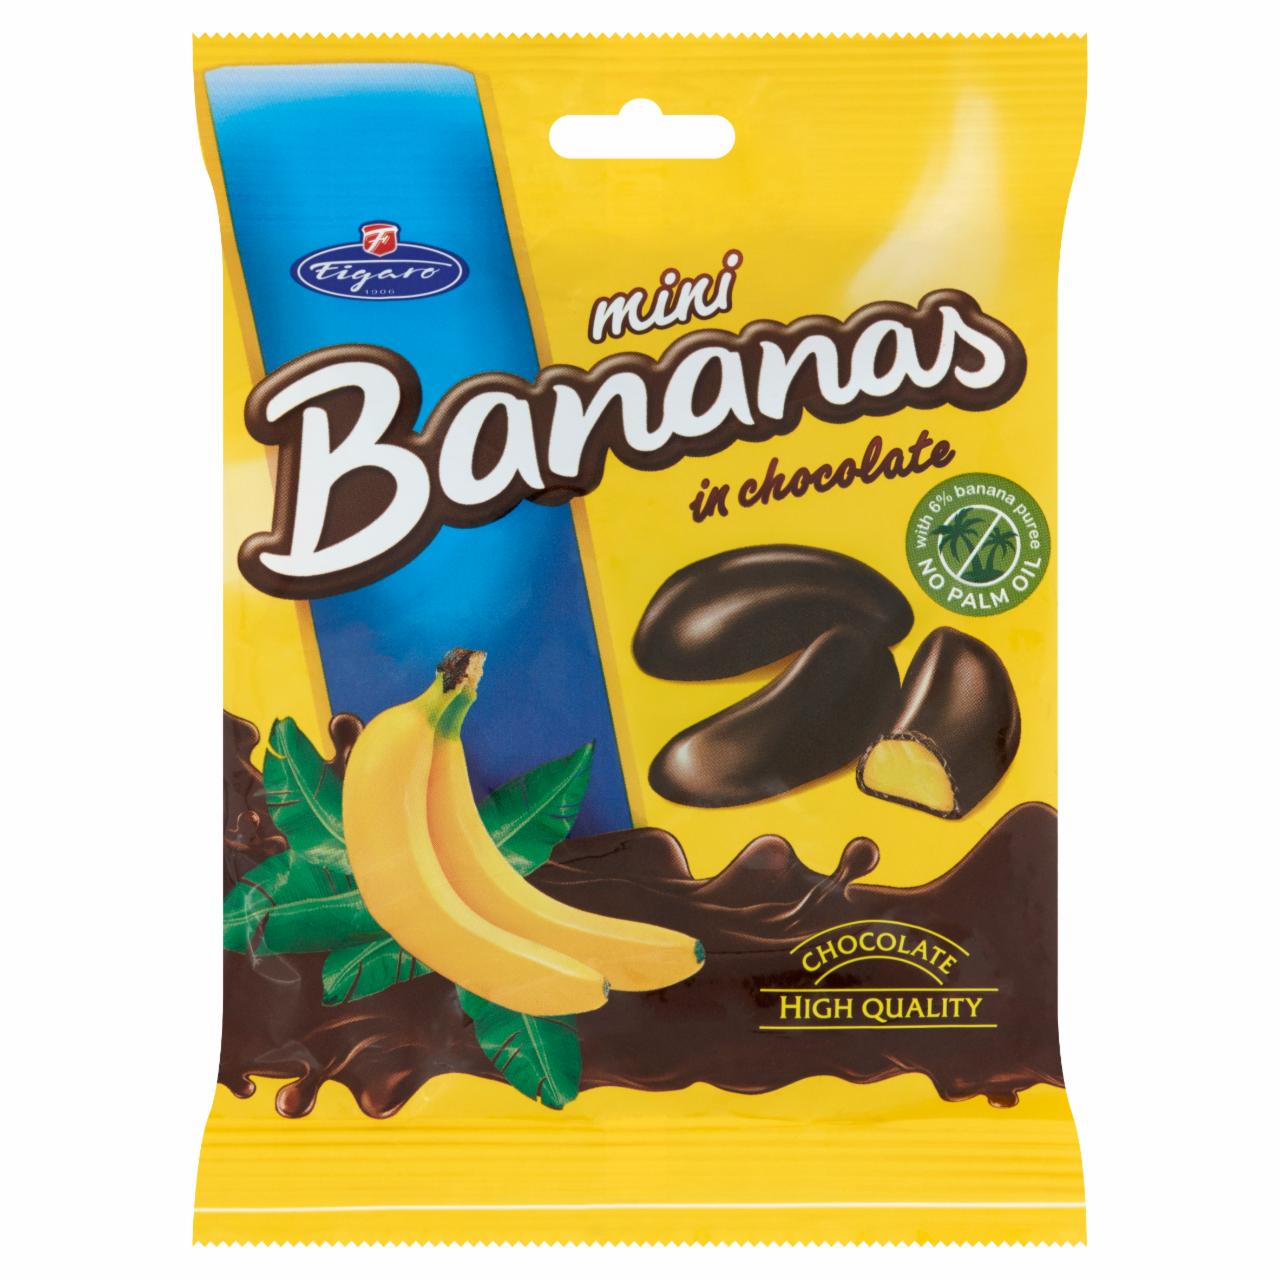 Képek - Figaro étcsokoládéval bevont banános habos zselék 75 g